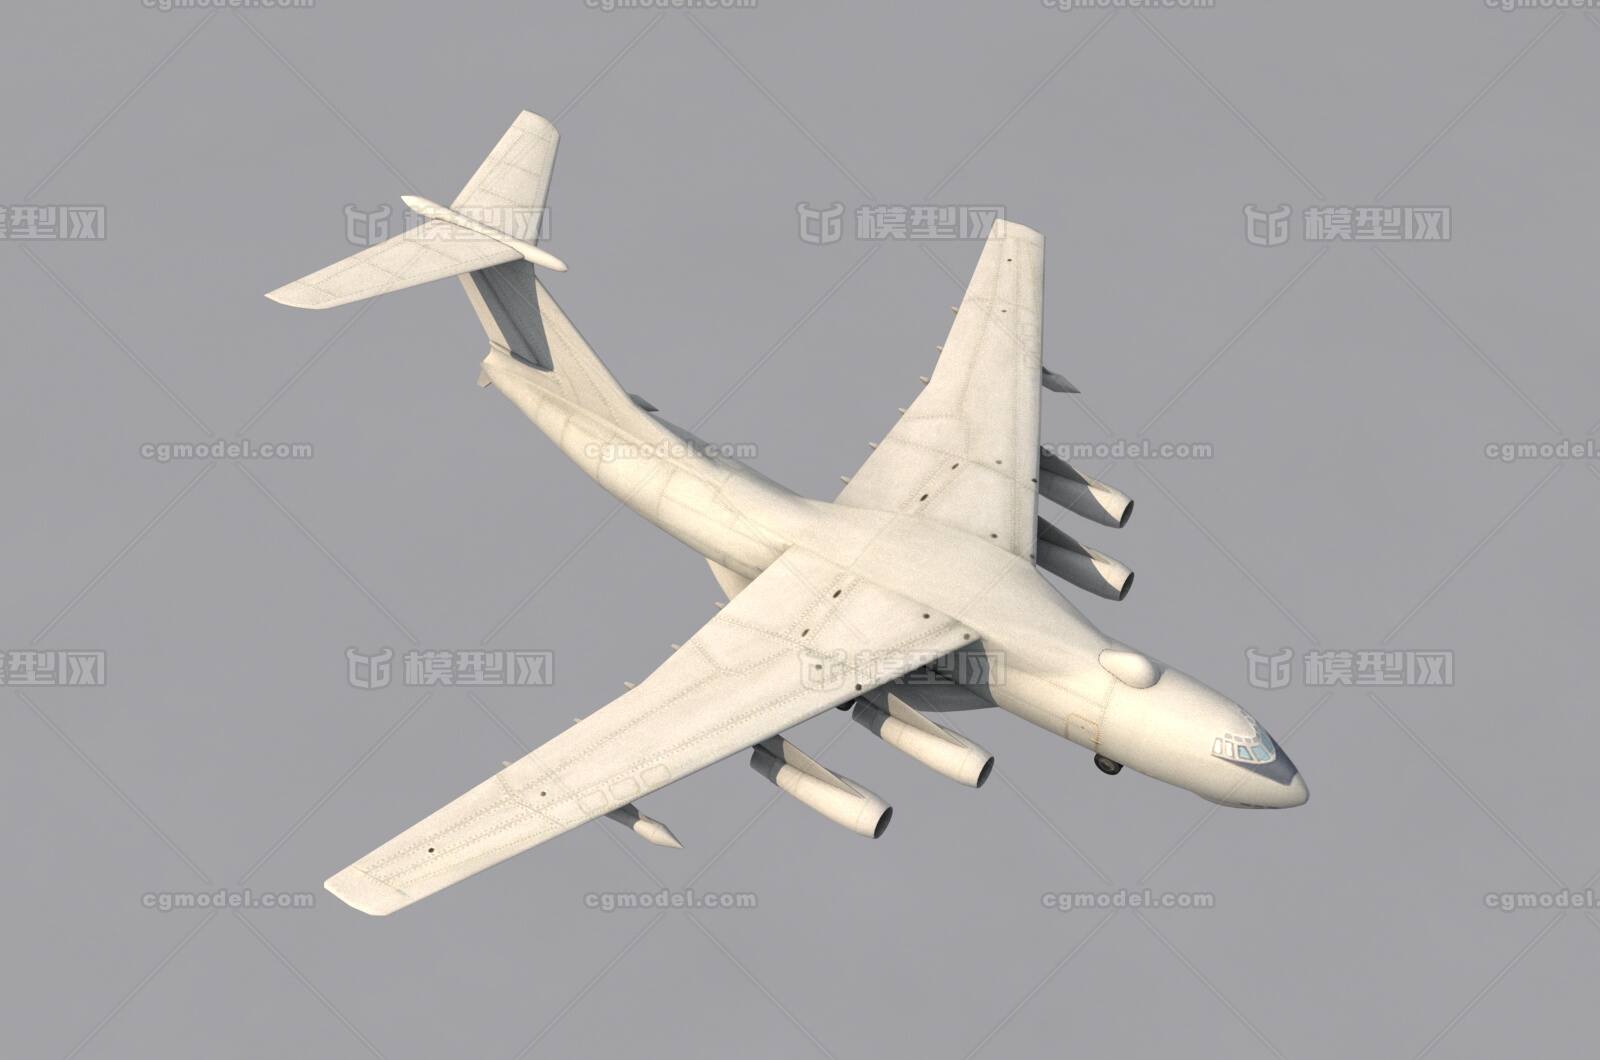 俄罗斯空军伊尔- 78m空中加油机,飞机,加油机,俄罗斯,军事,底模,游戏